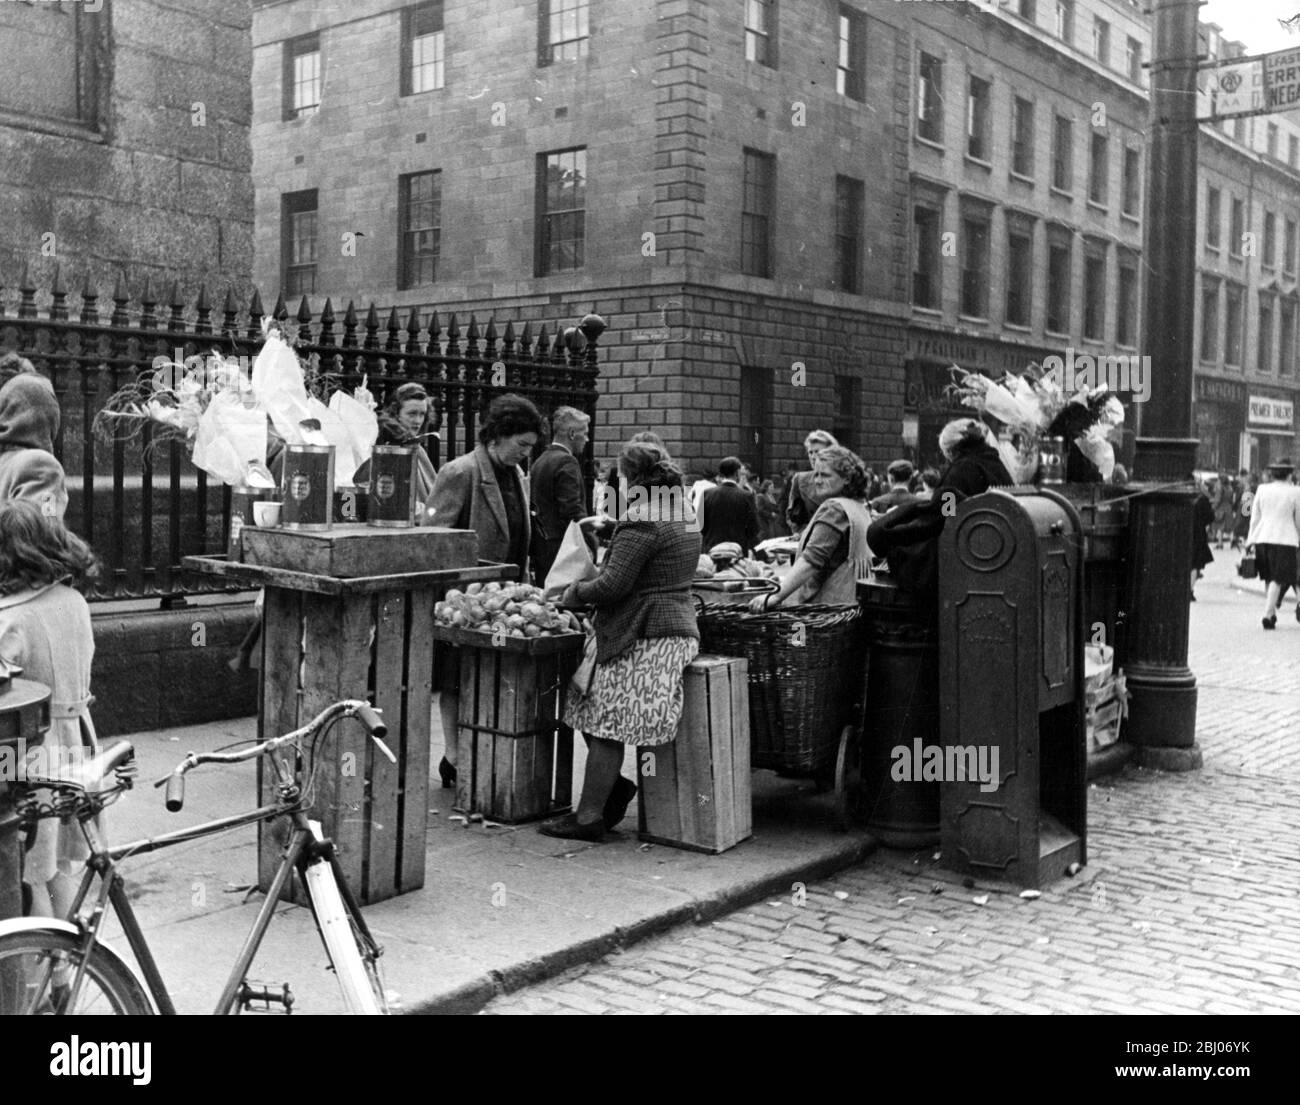 Westwood , Irlanda - non è possibile fare razionamento qui. Arance, banane e pomodori in vendita a tutti, non fare la coda e i prezzi sono a buon mercato. - 8 agosto 1946 Foto Stock